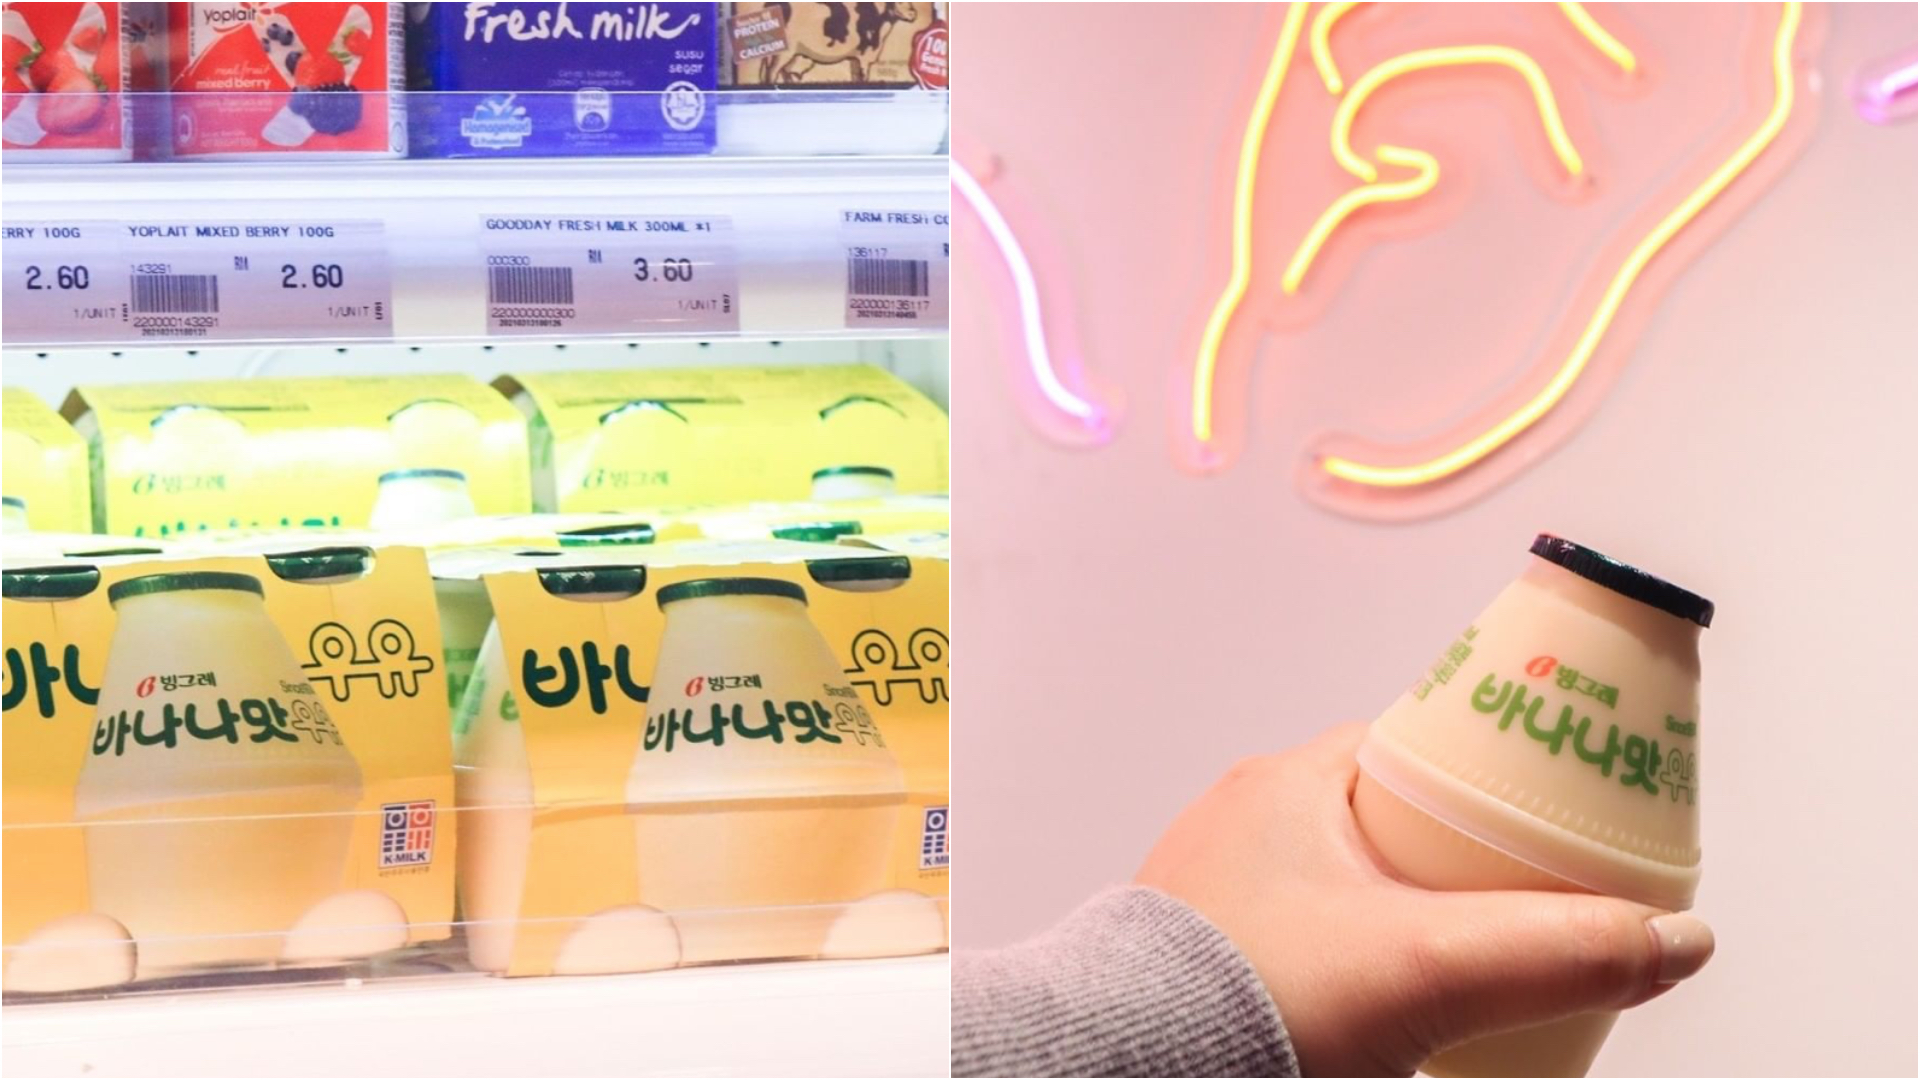 去韩国必喝的香蕉牛奶，在店内也买得到。-图摘自@jayagrocer/精彩大马制图-